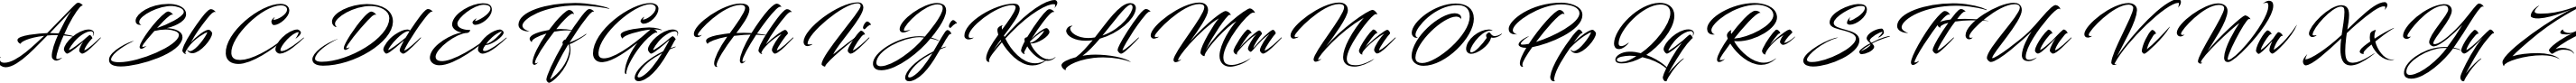 Пример написания английского алфавита шрифтом Blacksword